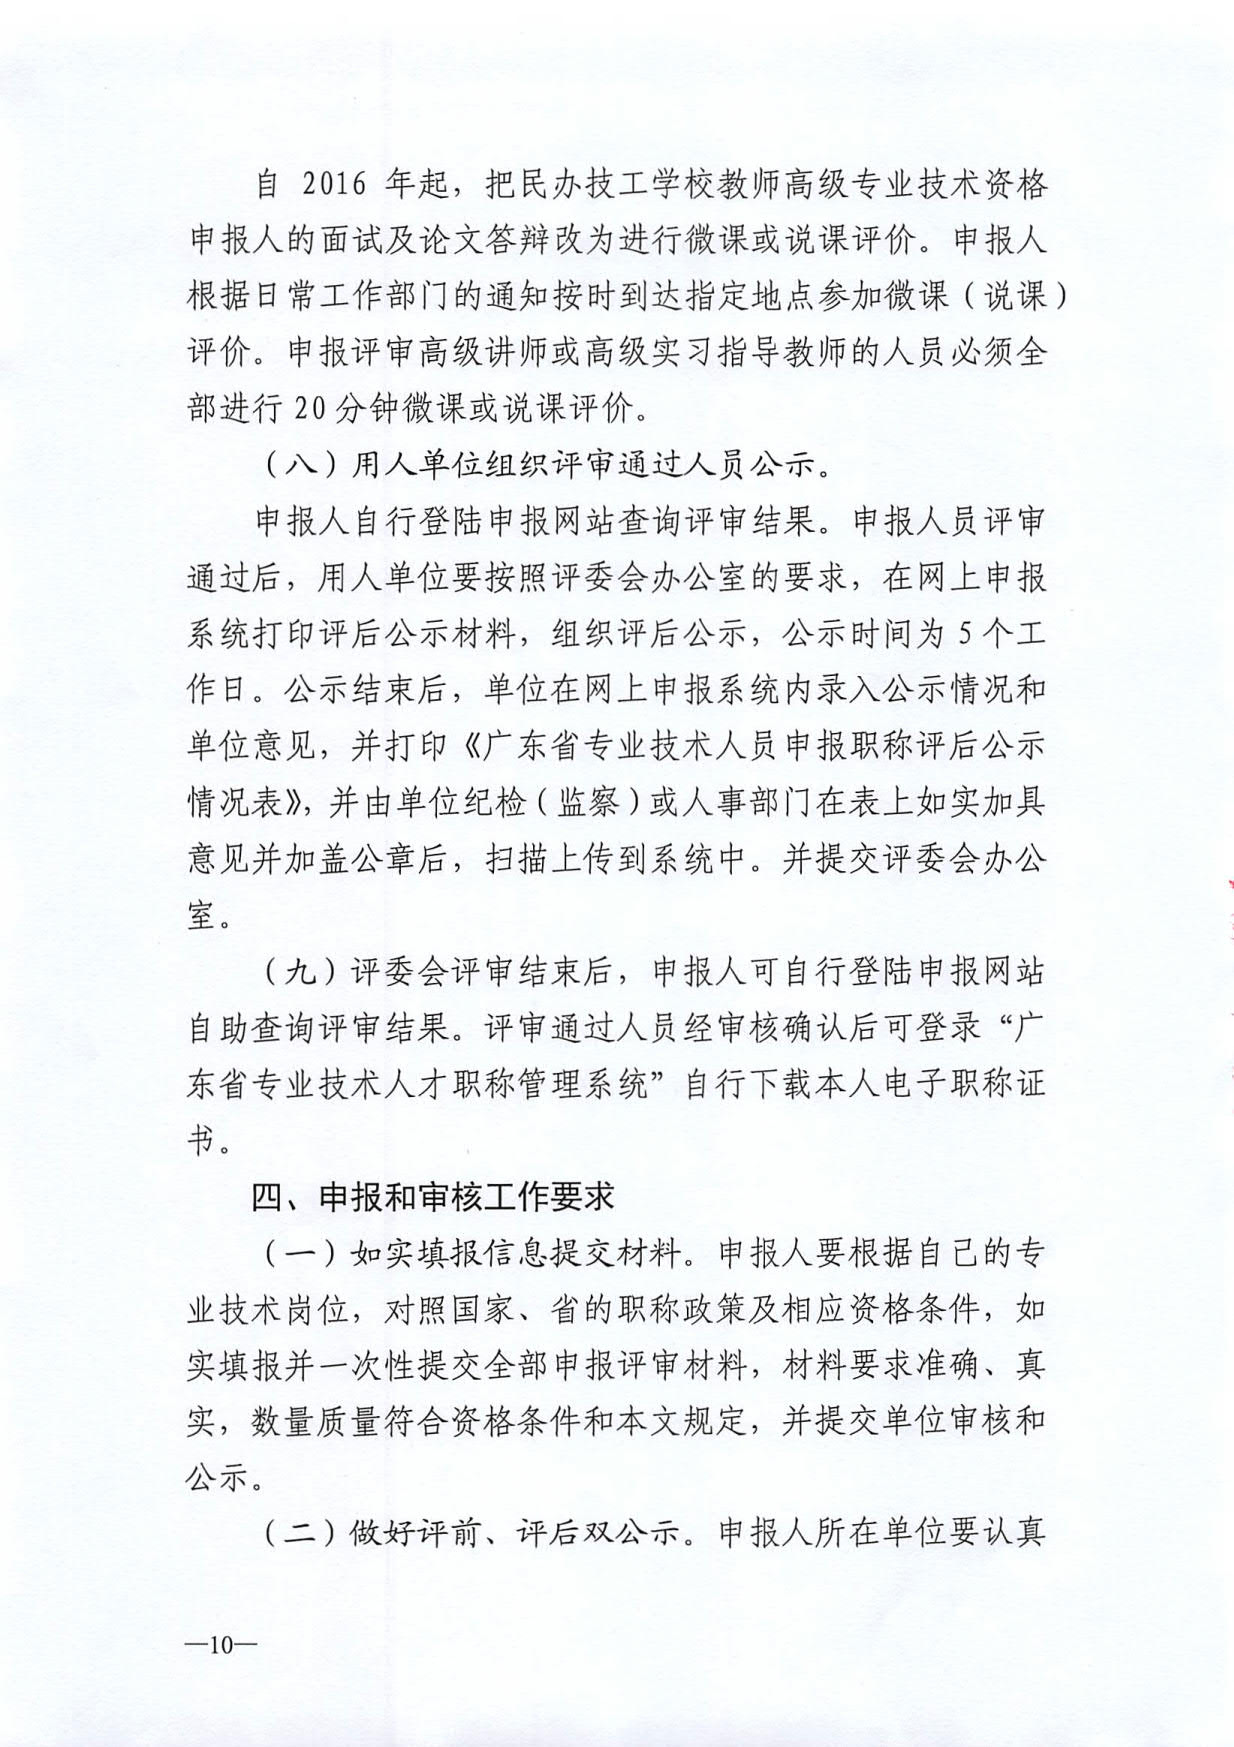 关于开展深圳市2020年度职称评审工作的通知_10.jpg